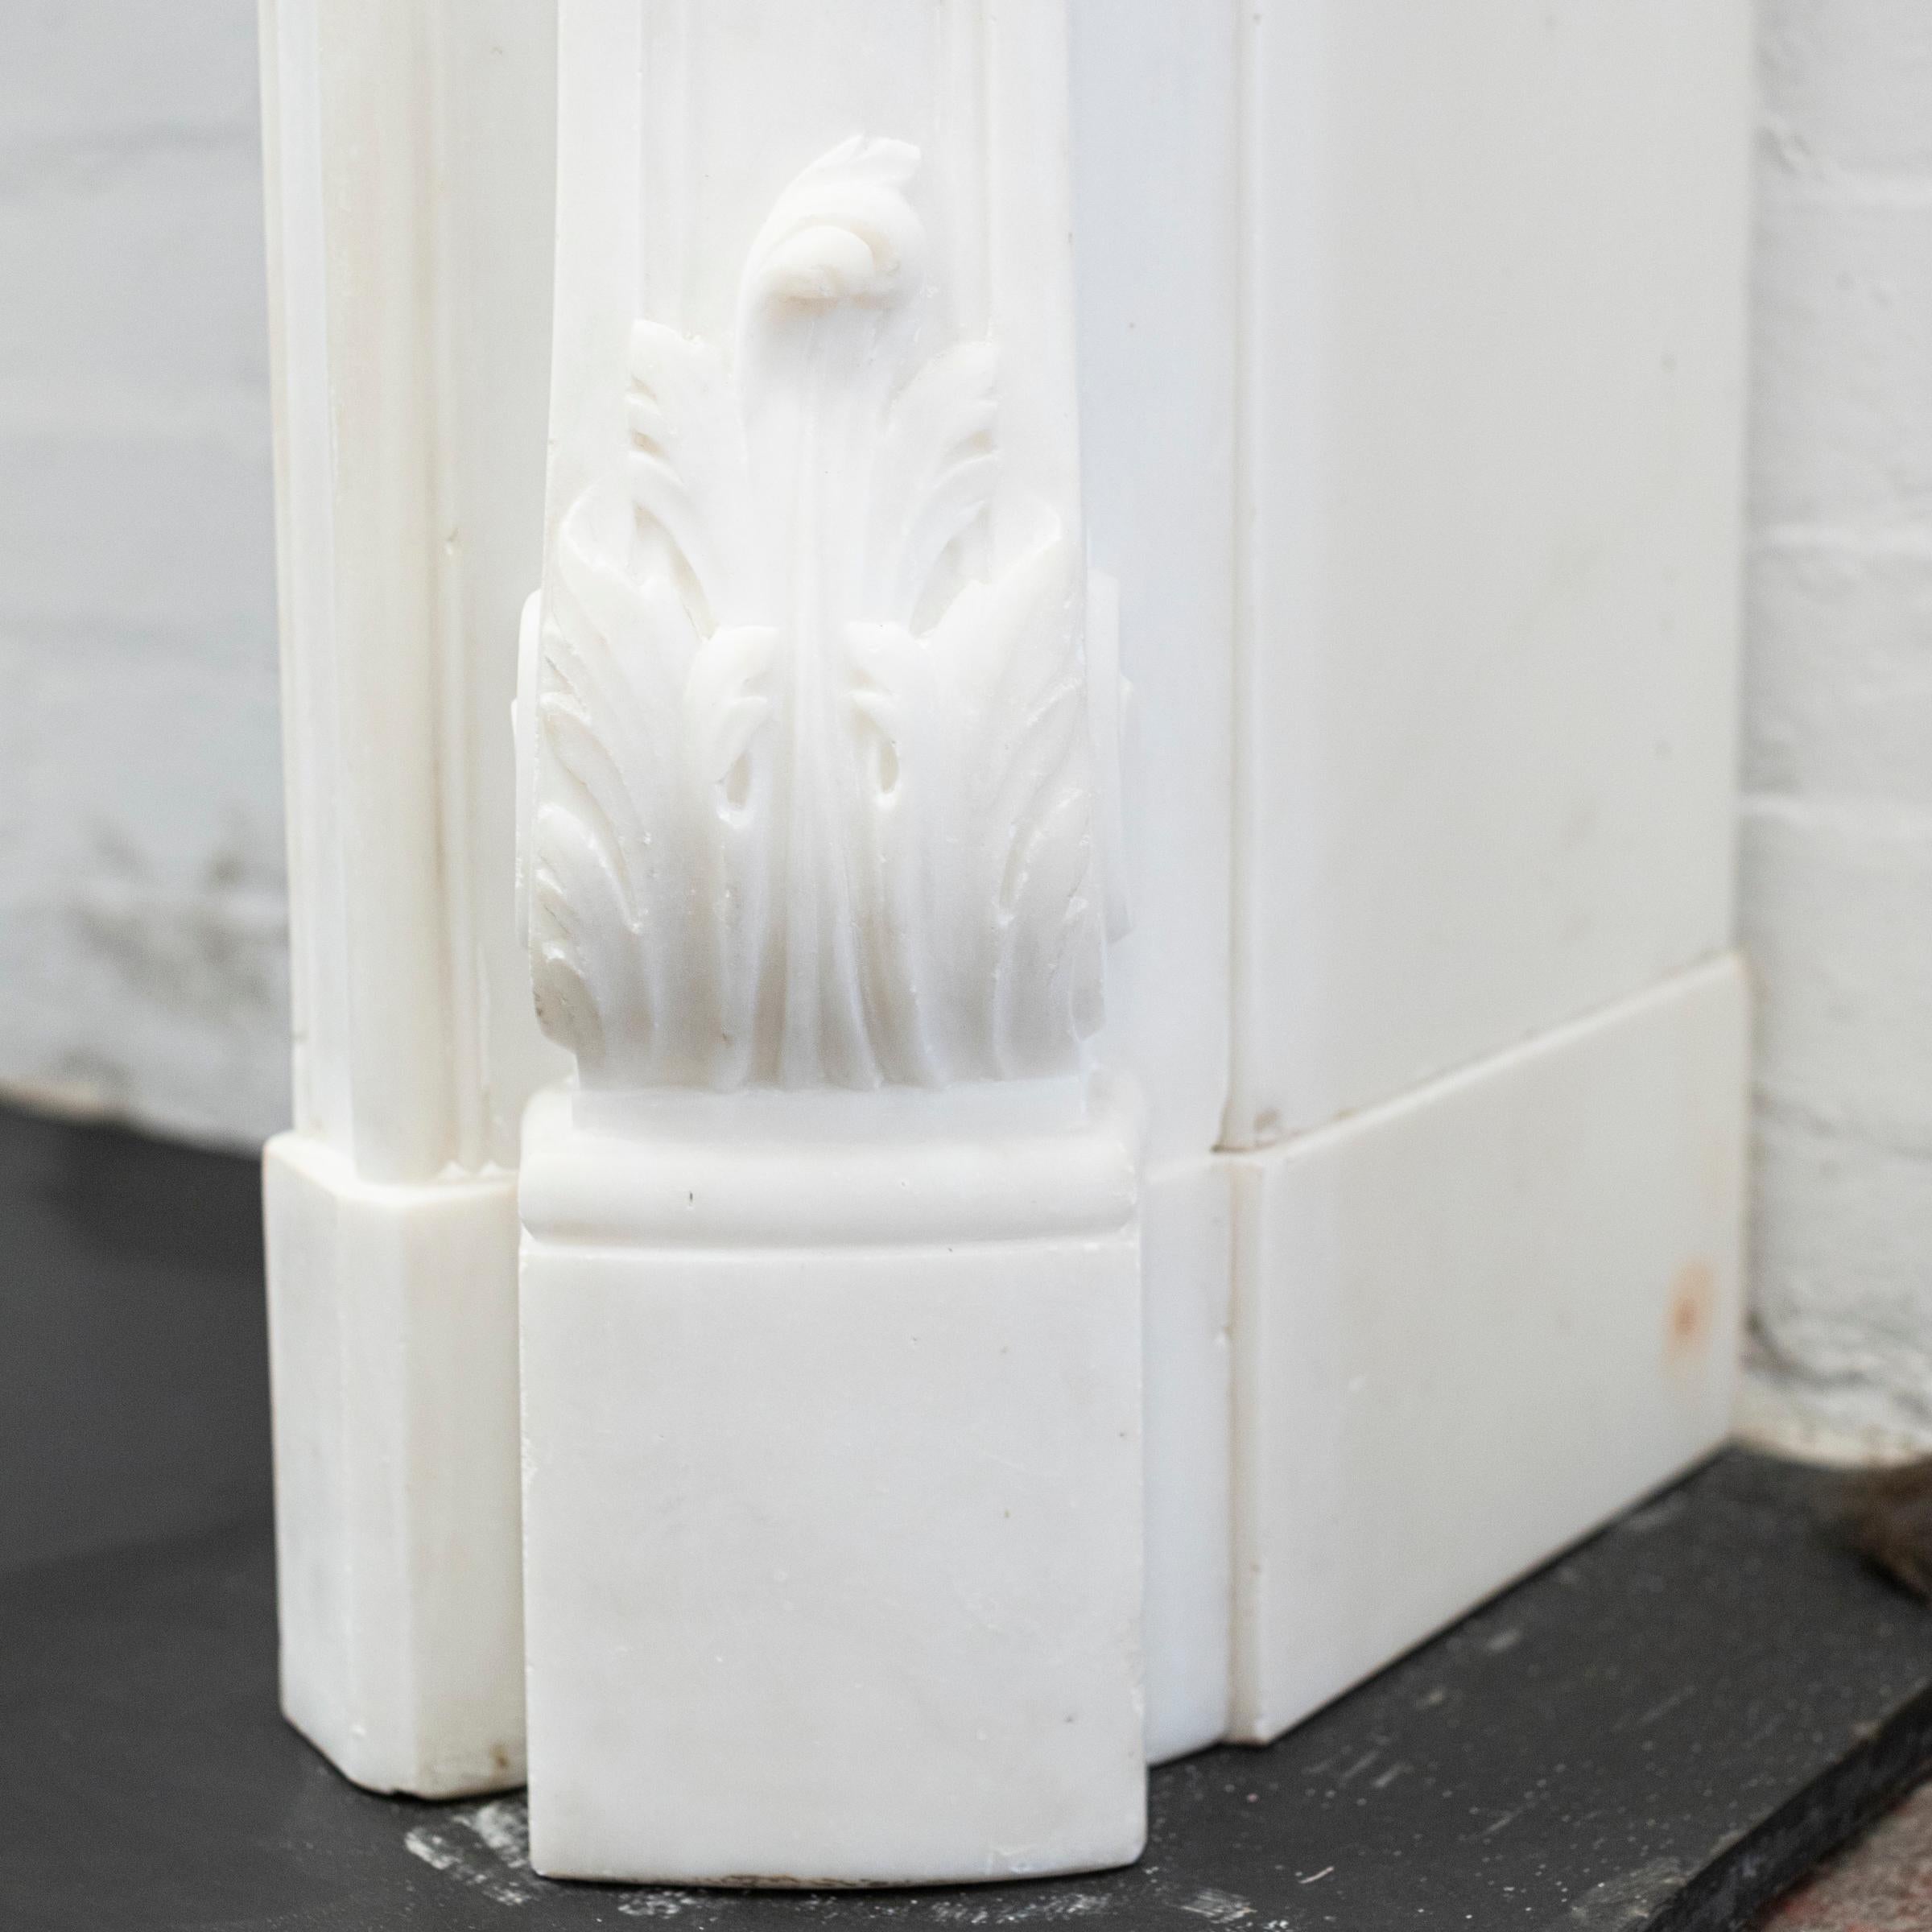 Cet encadrement de cheminée Louis XV, 19e, a été réalisé en marbre statuaire. Cica 1840

La cheminée est dotée d'une étagère en forme de serpentin, d'une ouverture en forme et de jambages à panneaux angulaires.

Dimensions
Étagère : 157 cm de large